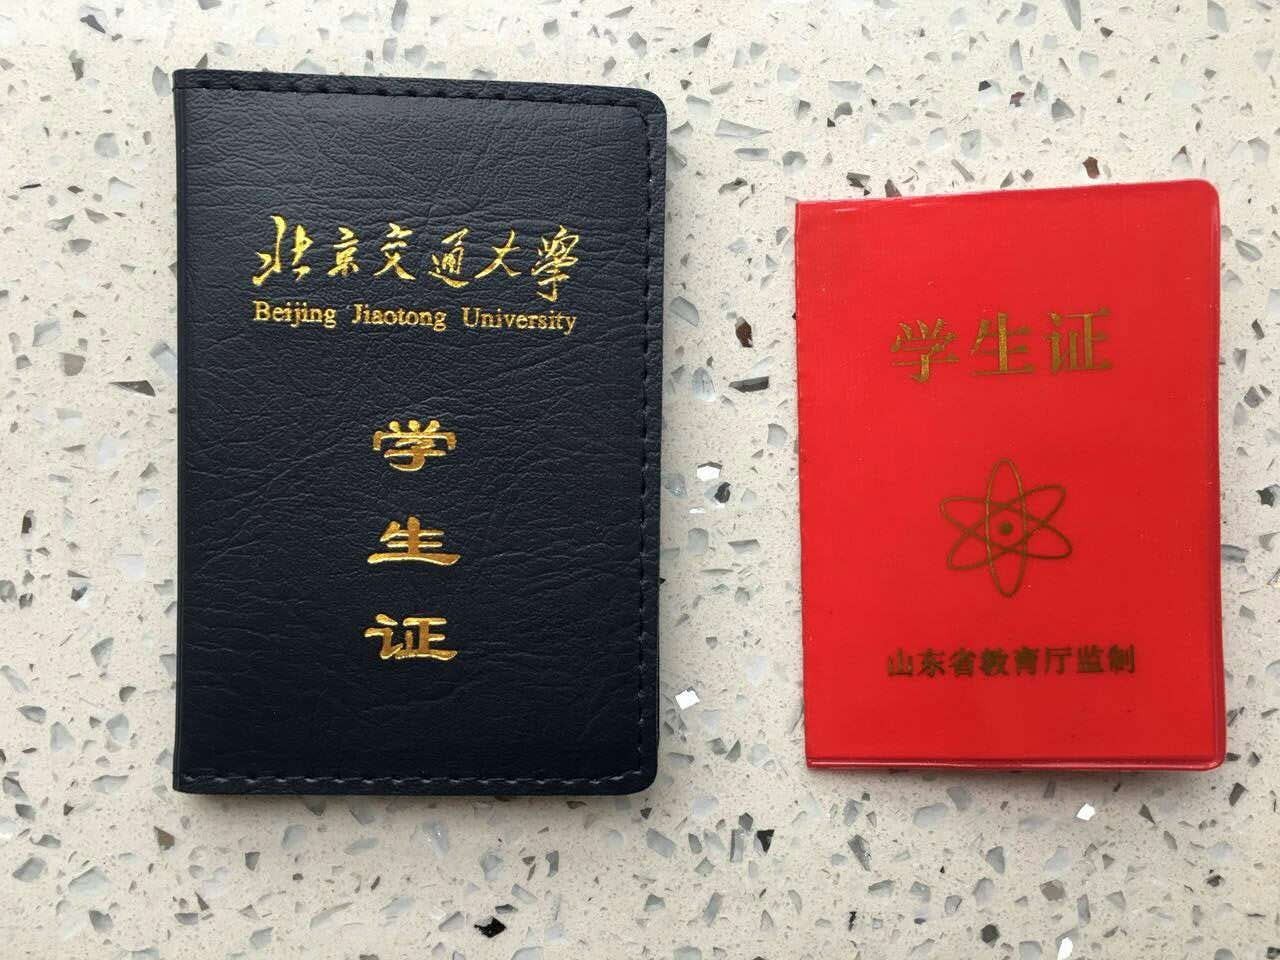 北京交通大学学生证 vs 高中学生证求学的日子浓缩成短短几页纸它们